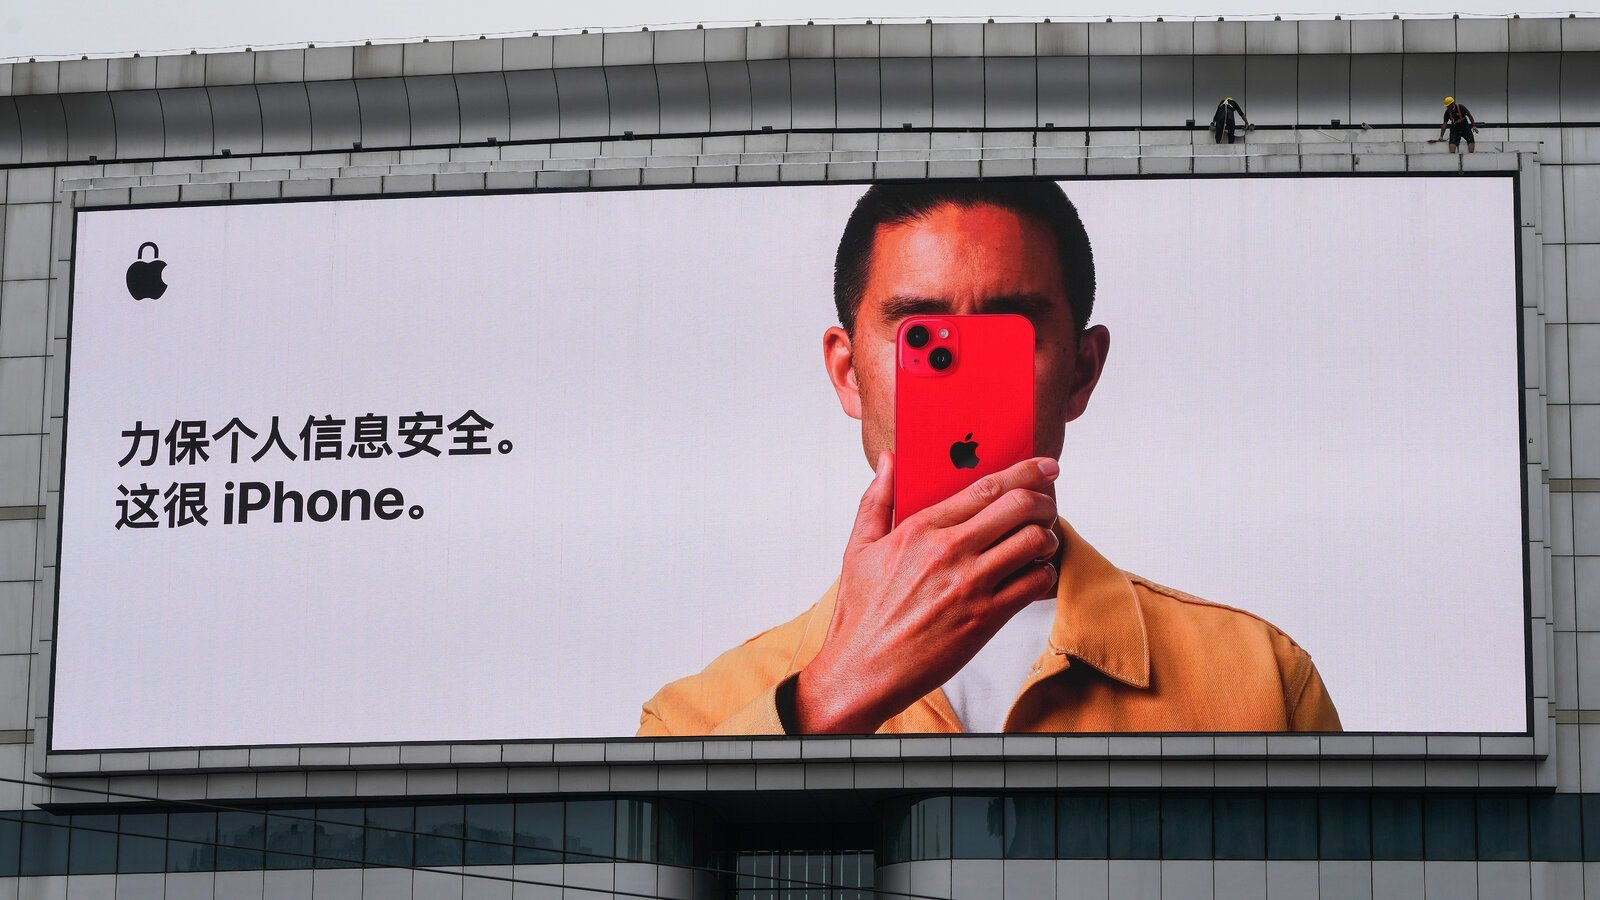 &quot;3,5 tỷ USD của Apple sắp đến tay người dùng iPhone, sao lại trừ chúng ta?&quot; - Người Trung Quốc than vãn - Ảnh 1.